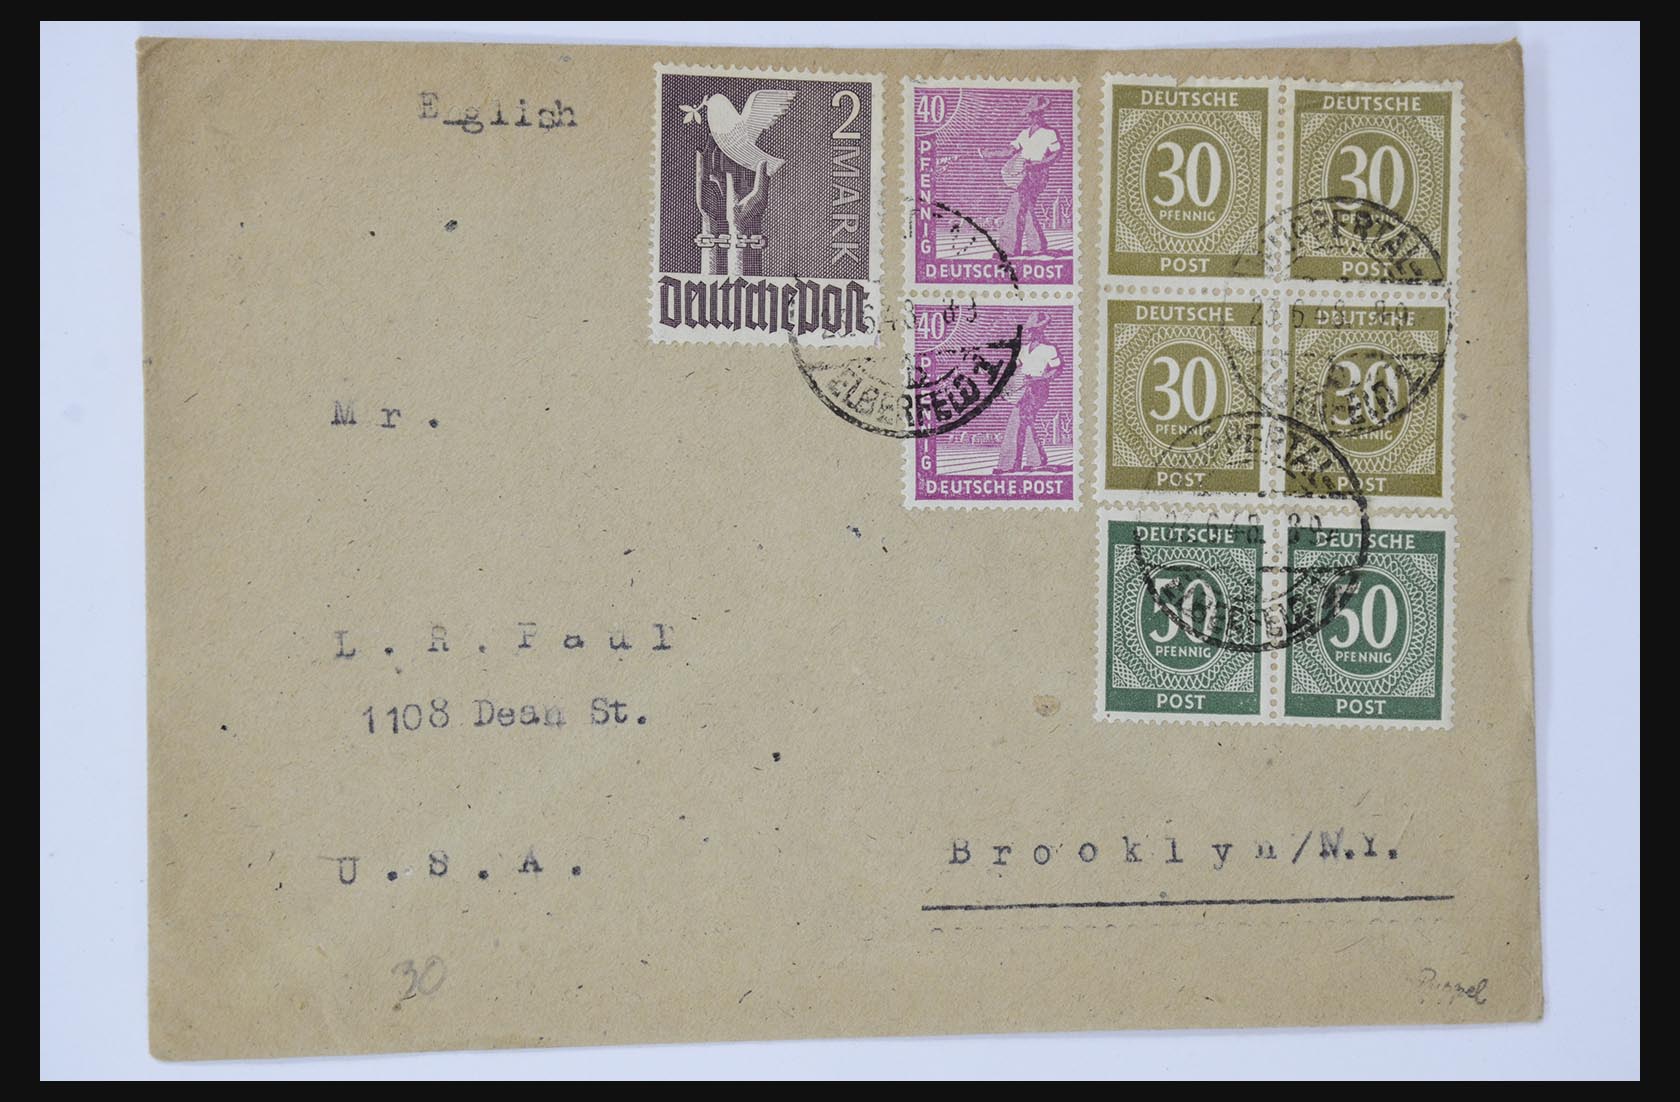 31581 035 - 31581 Duitsland brieven en FDC's 1945-1981.